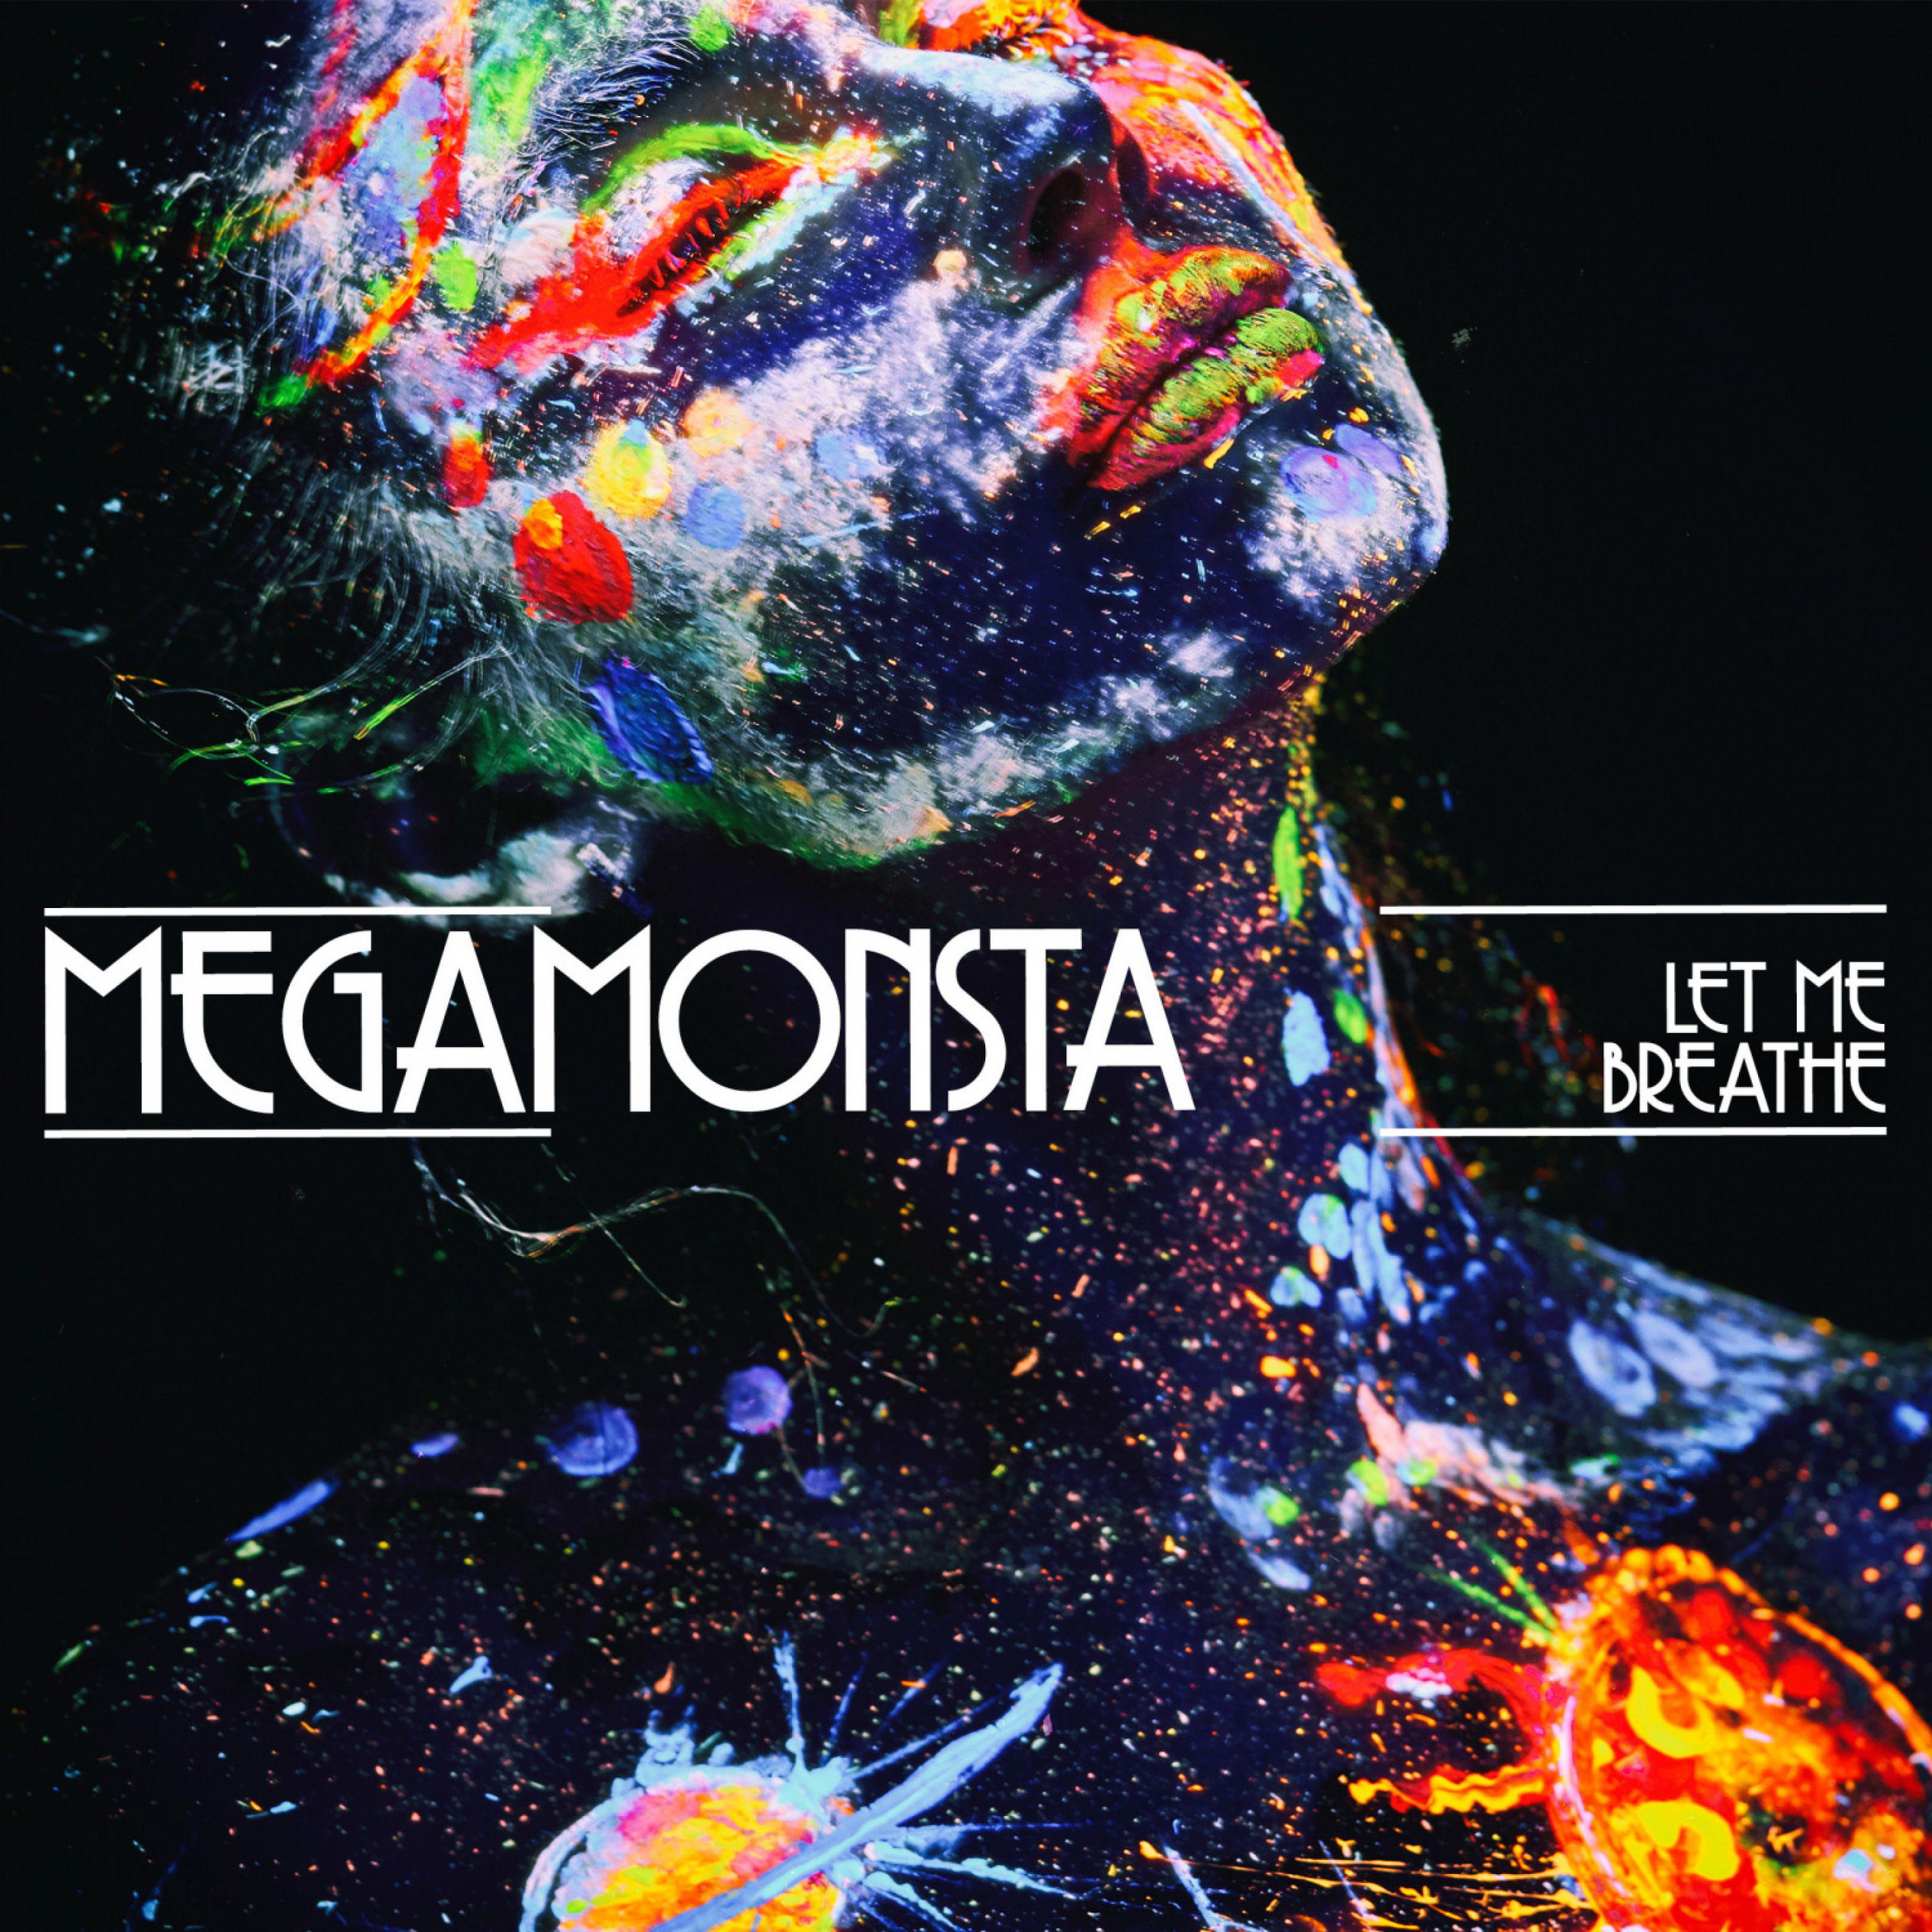 Megamonsta - Let Me Breathe